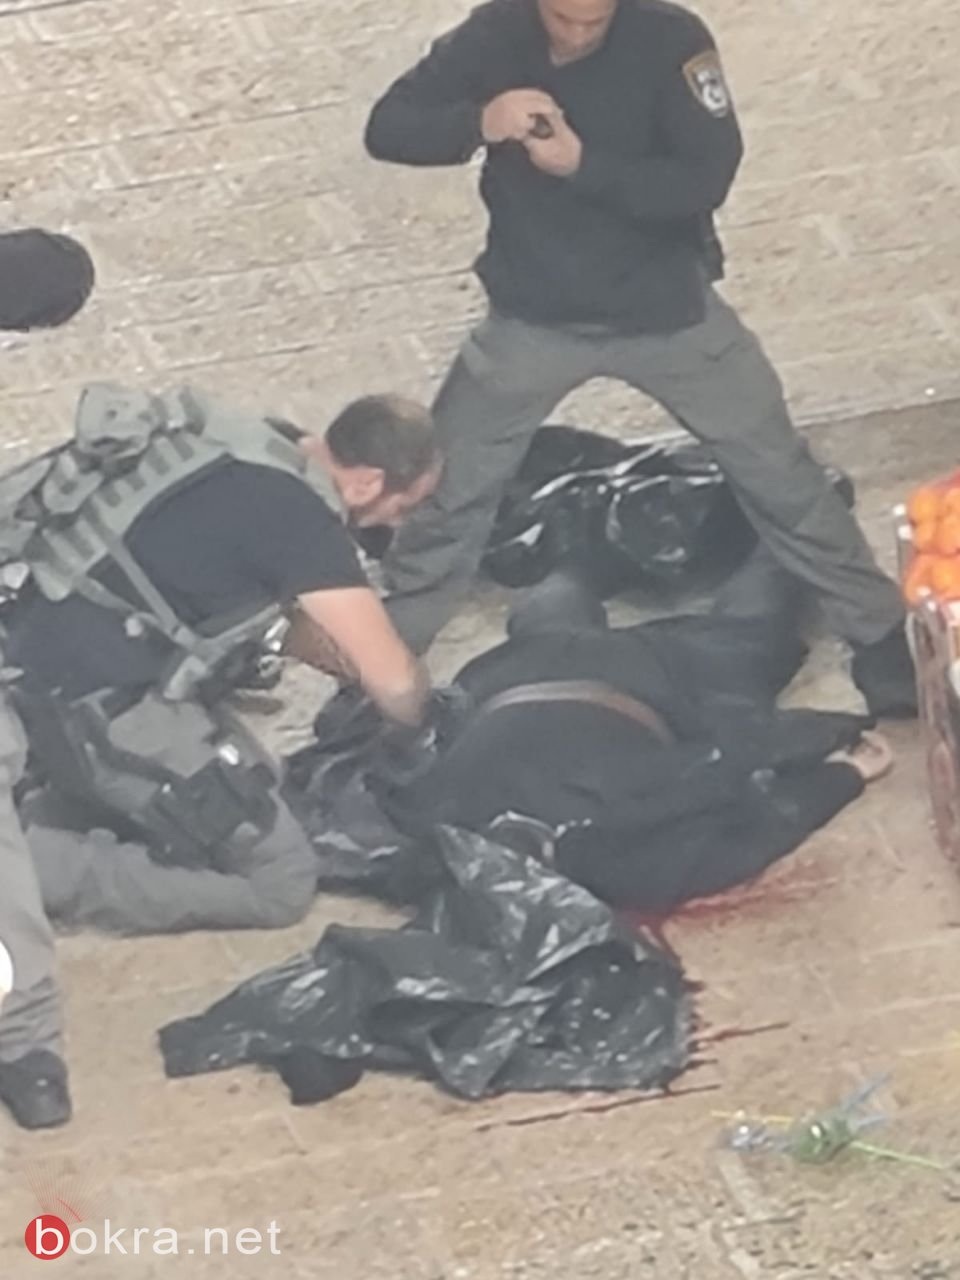 القدس: اطلاق نار عند باب السلسة واستشهاد فادي ابو شخيدم منفذ العملية،ومقتل شخص واصابة اخرين-1